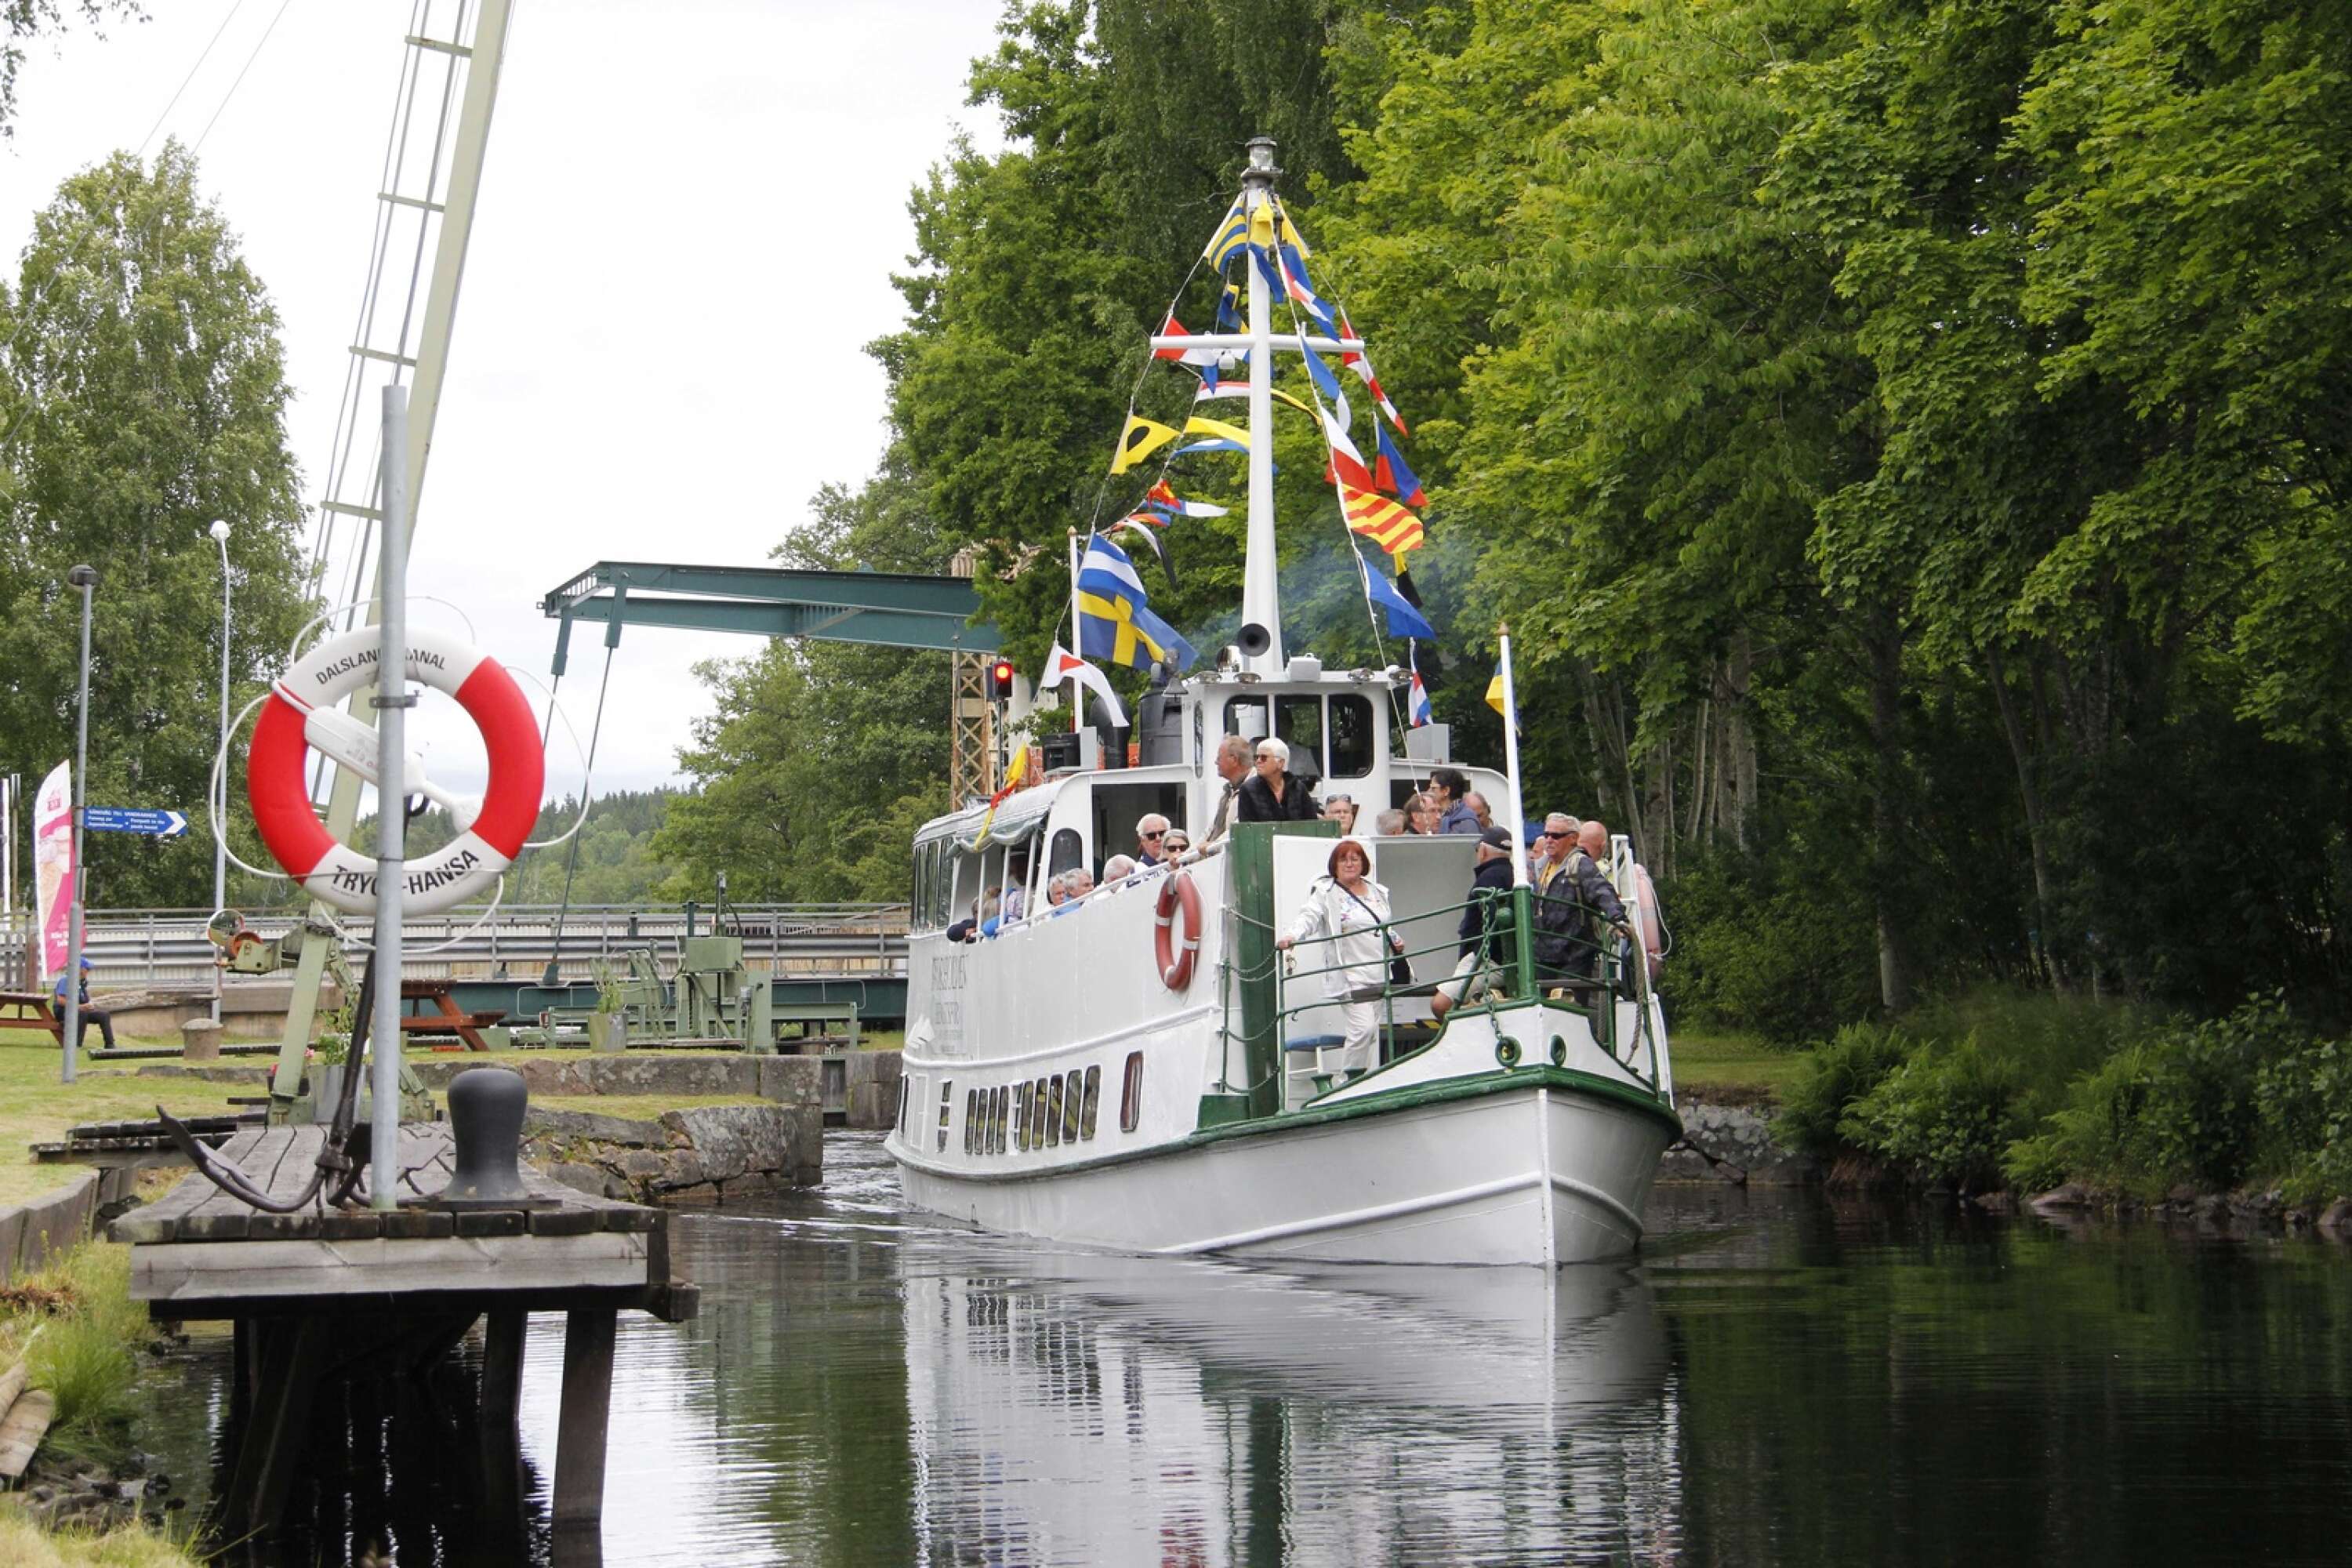 Alldeles utanför Kanalvillan slussar passagerarbåtarna på Dalslands kanal och ofta övernattar turisterna både före och efter turen till Håverud då sommartågen stannar i Långbron.